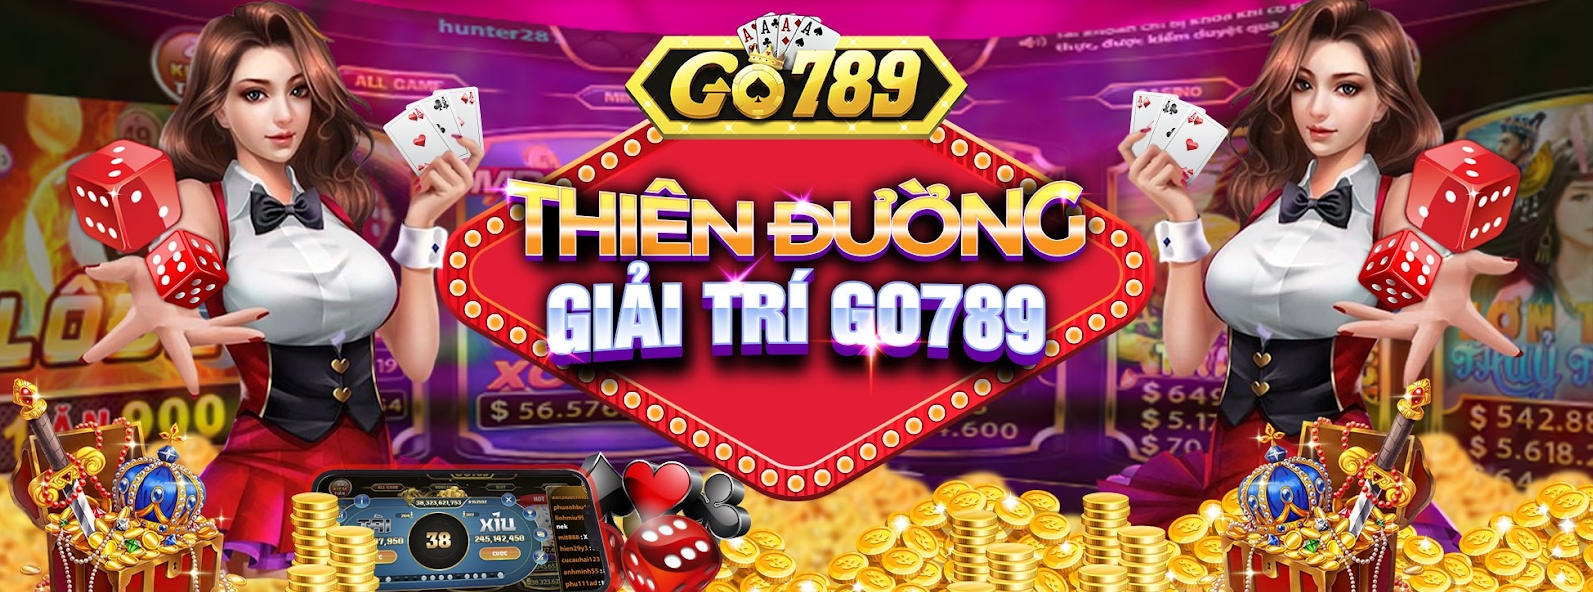 Go789 – Cổng game thu hút người chơi nhiều nhất hiện nay